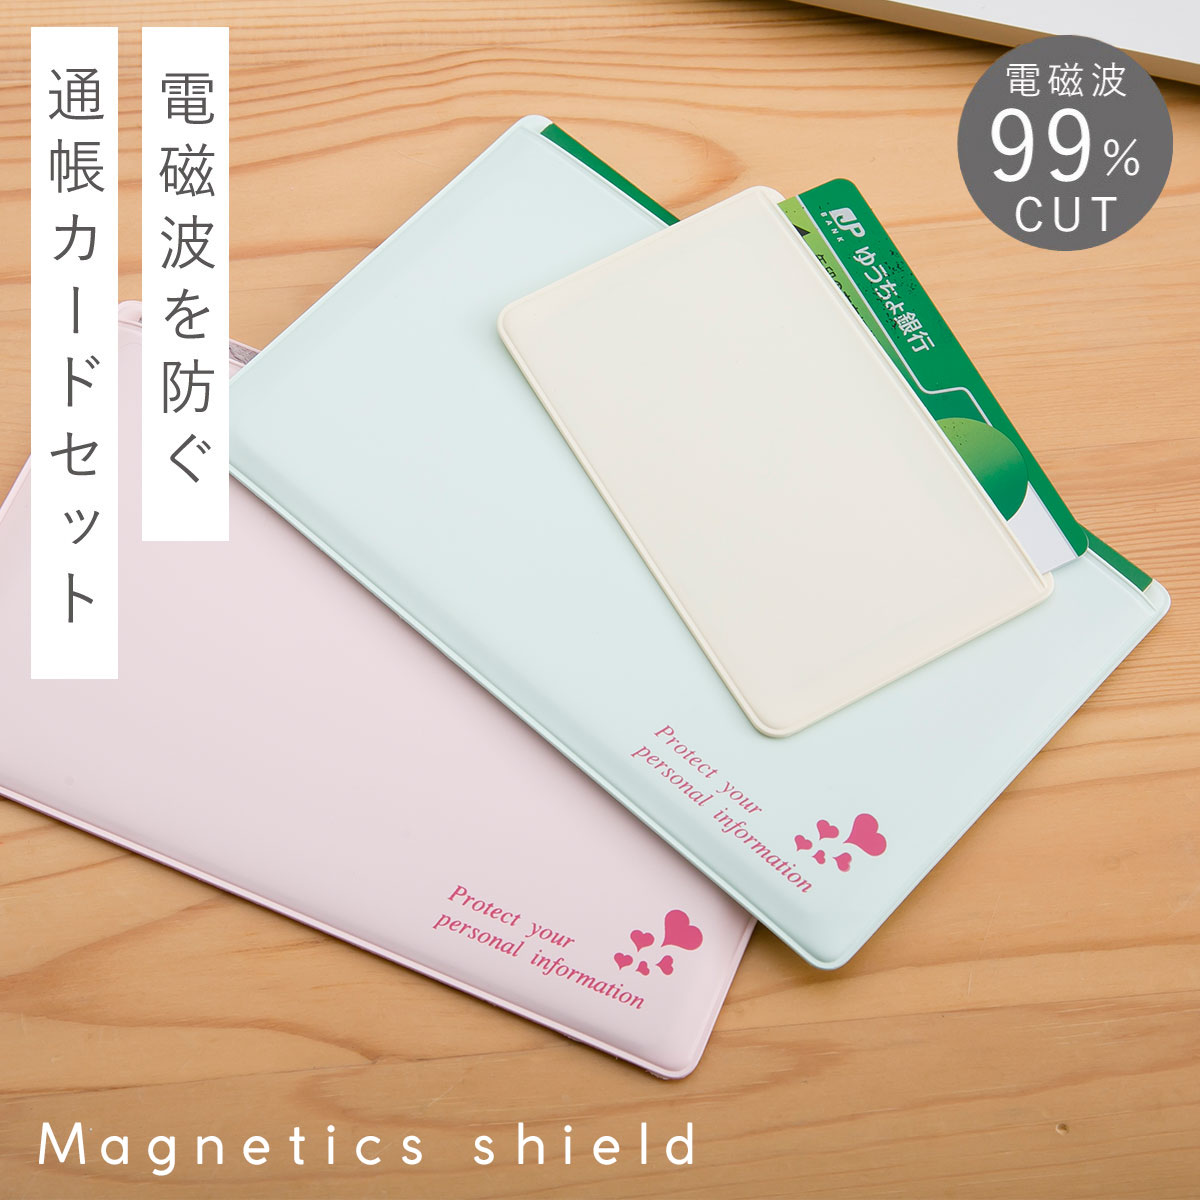 通帳ケース 磁気 防止 磁気シールド スキミング防止 日本製 かわいい カードケース 年金手帳 クレ...